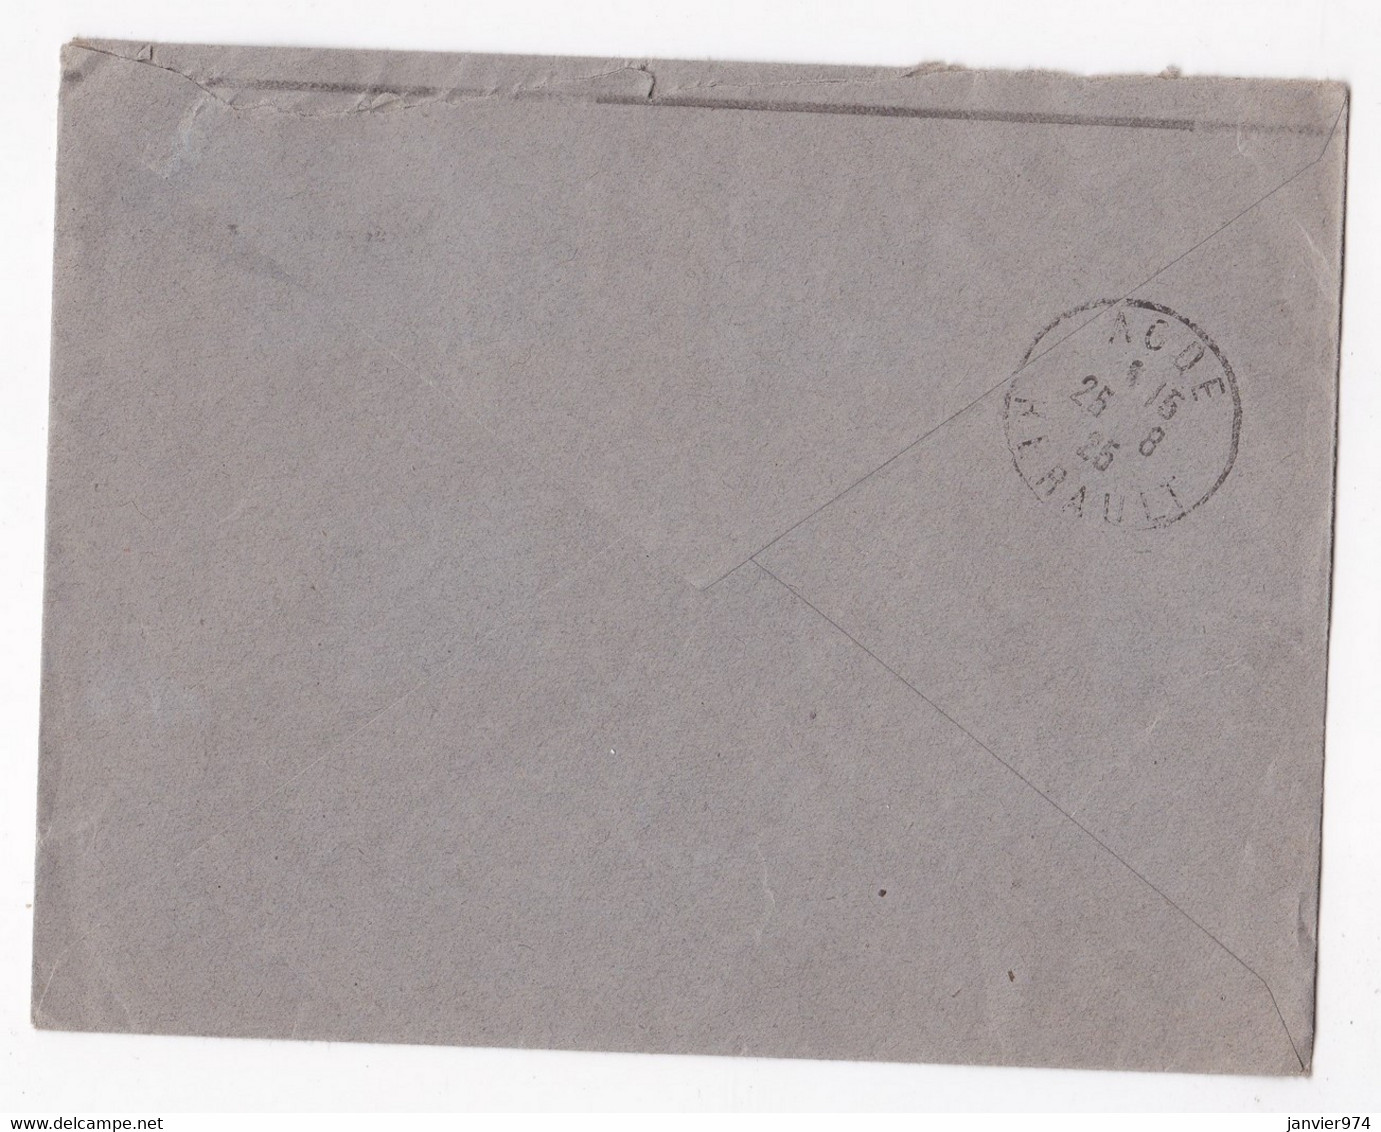 Enveloppe 1925, G. Schloesser, Bijoutier Fabriquant à Perpignan - Covers & Documents